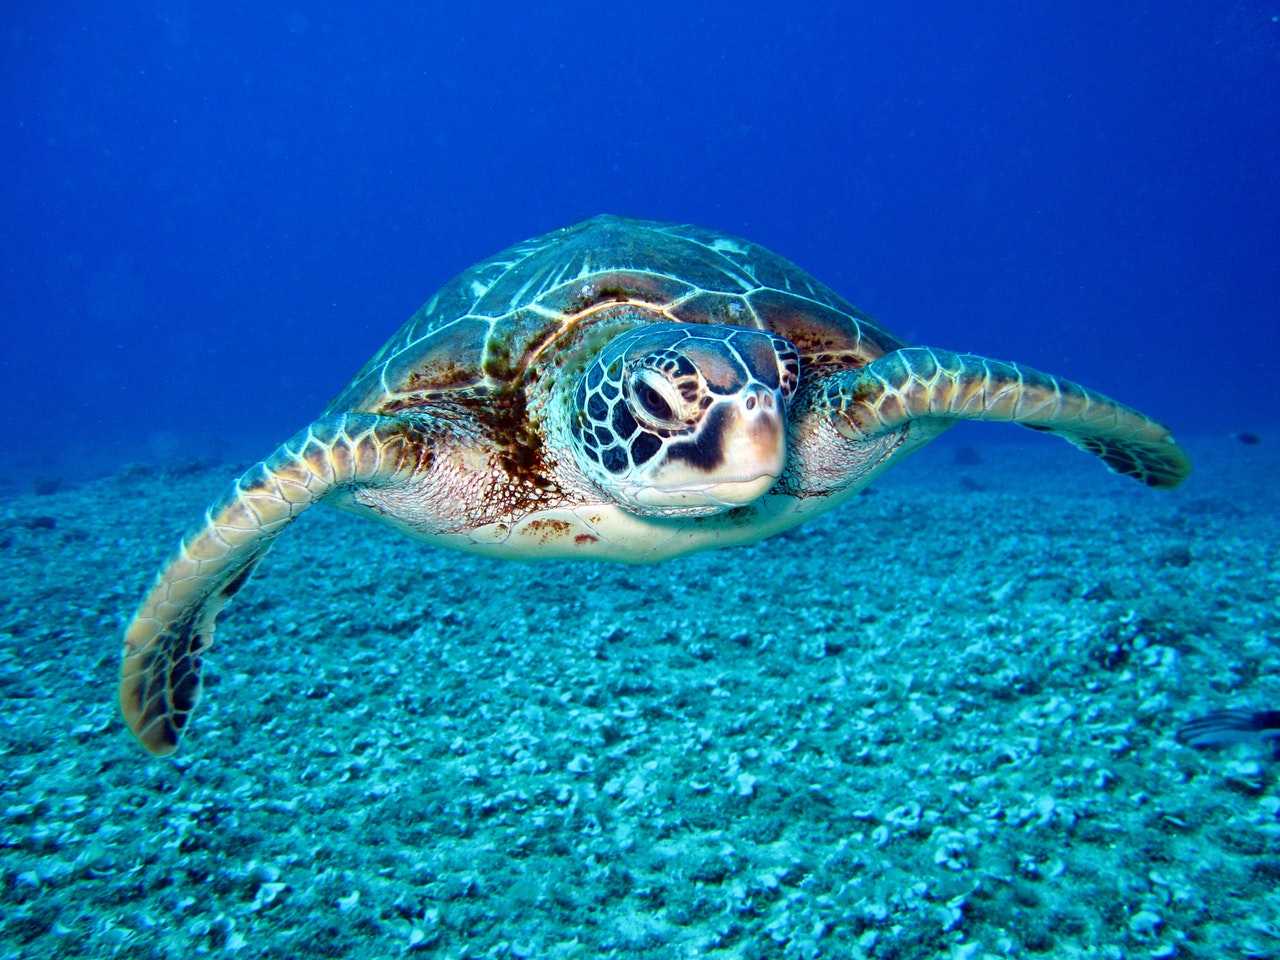 Sea turtle 